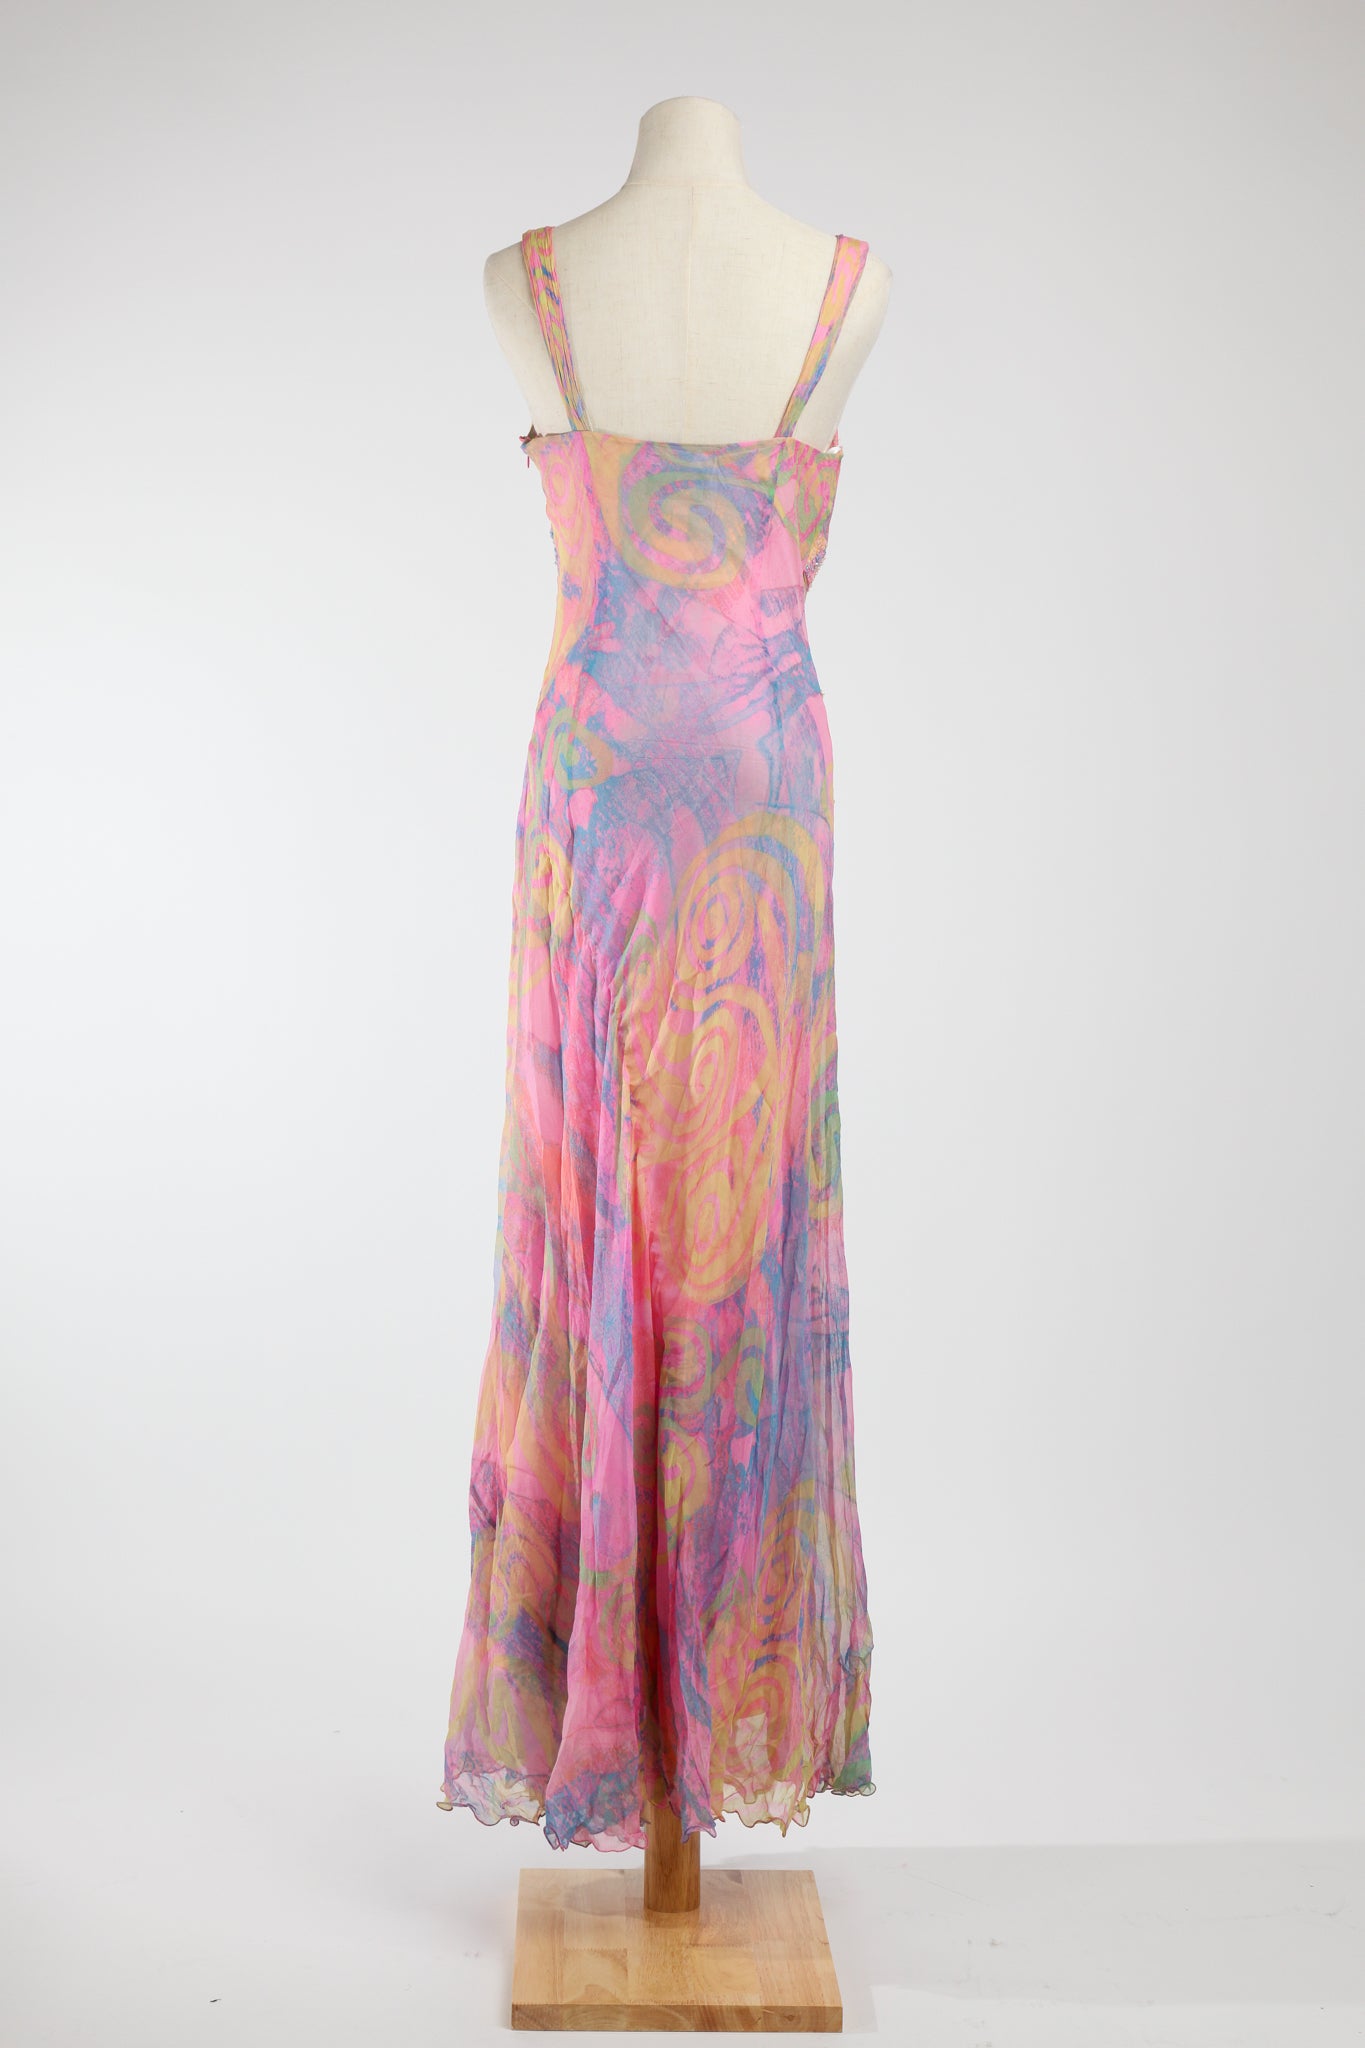 Diane Freis - Nebula Pink Chiffon dress